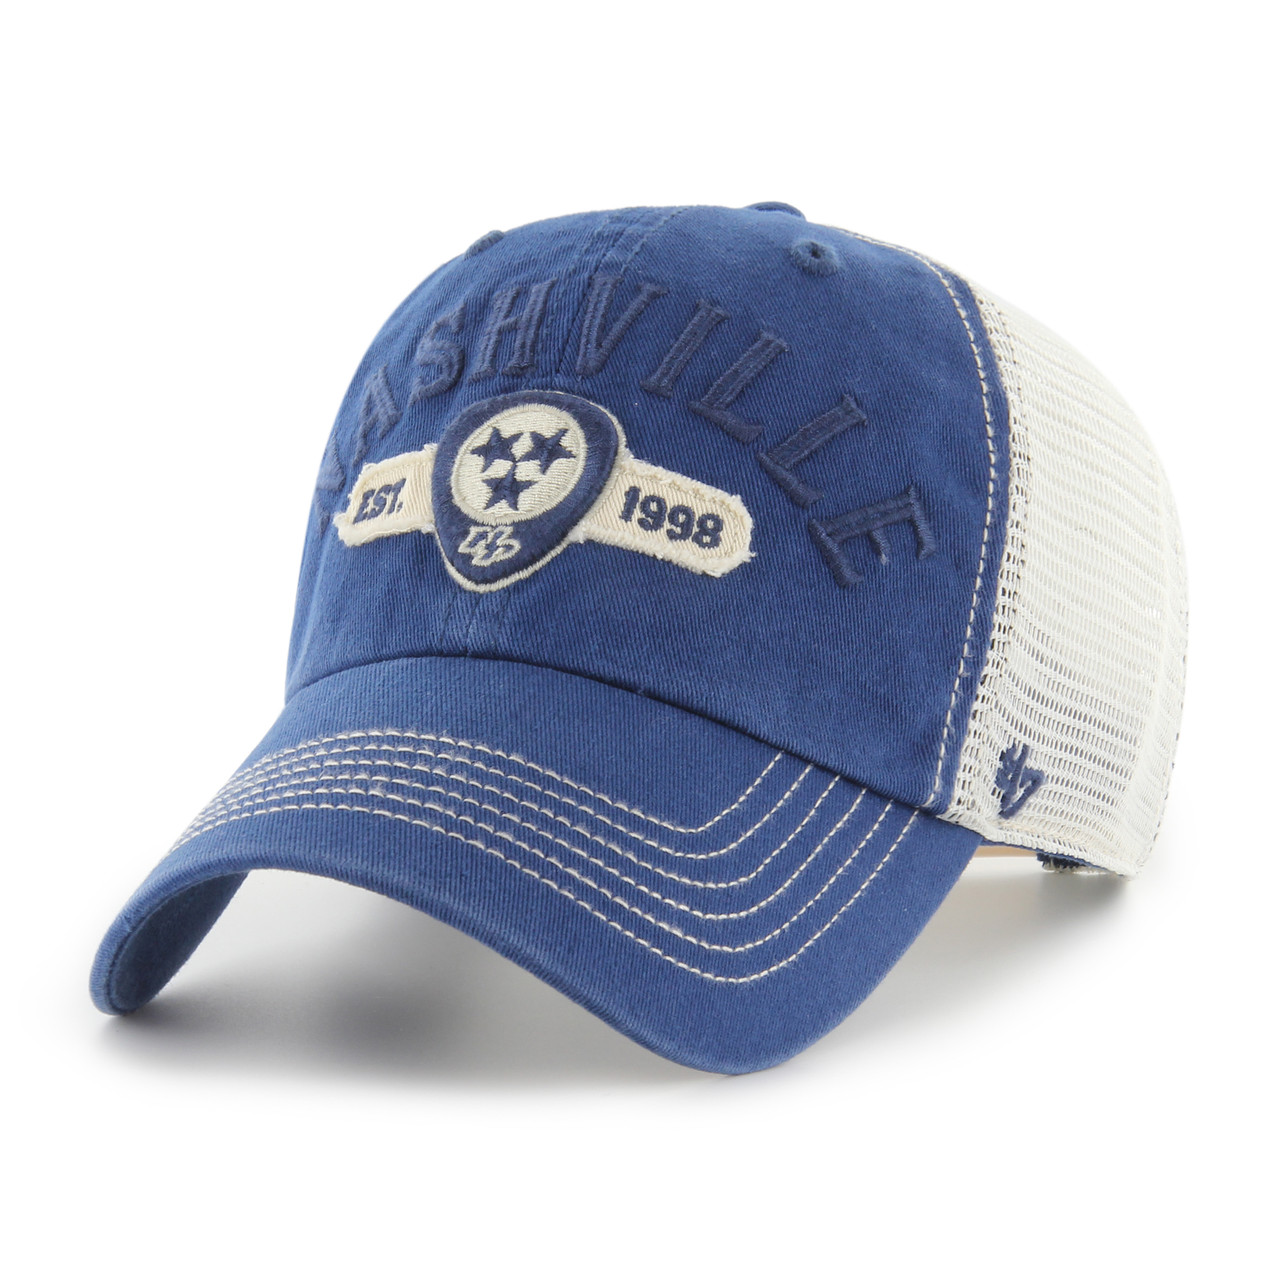 Nashville Predators 47 Brand Pick Trucker Hat